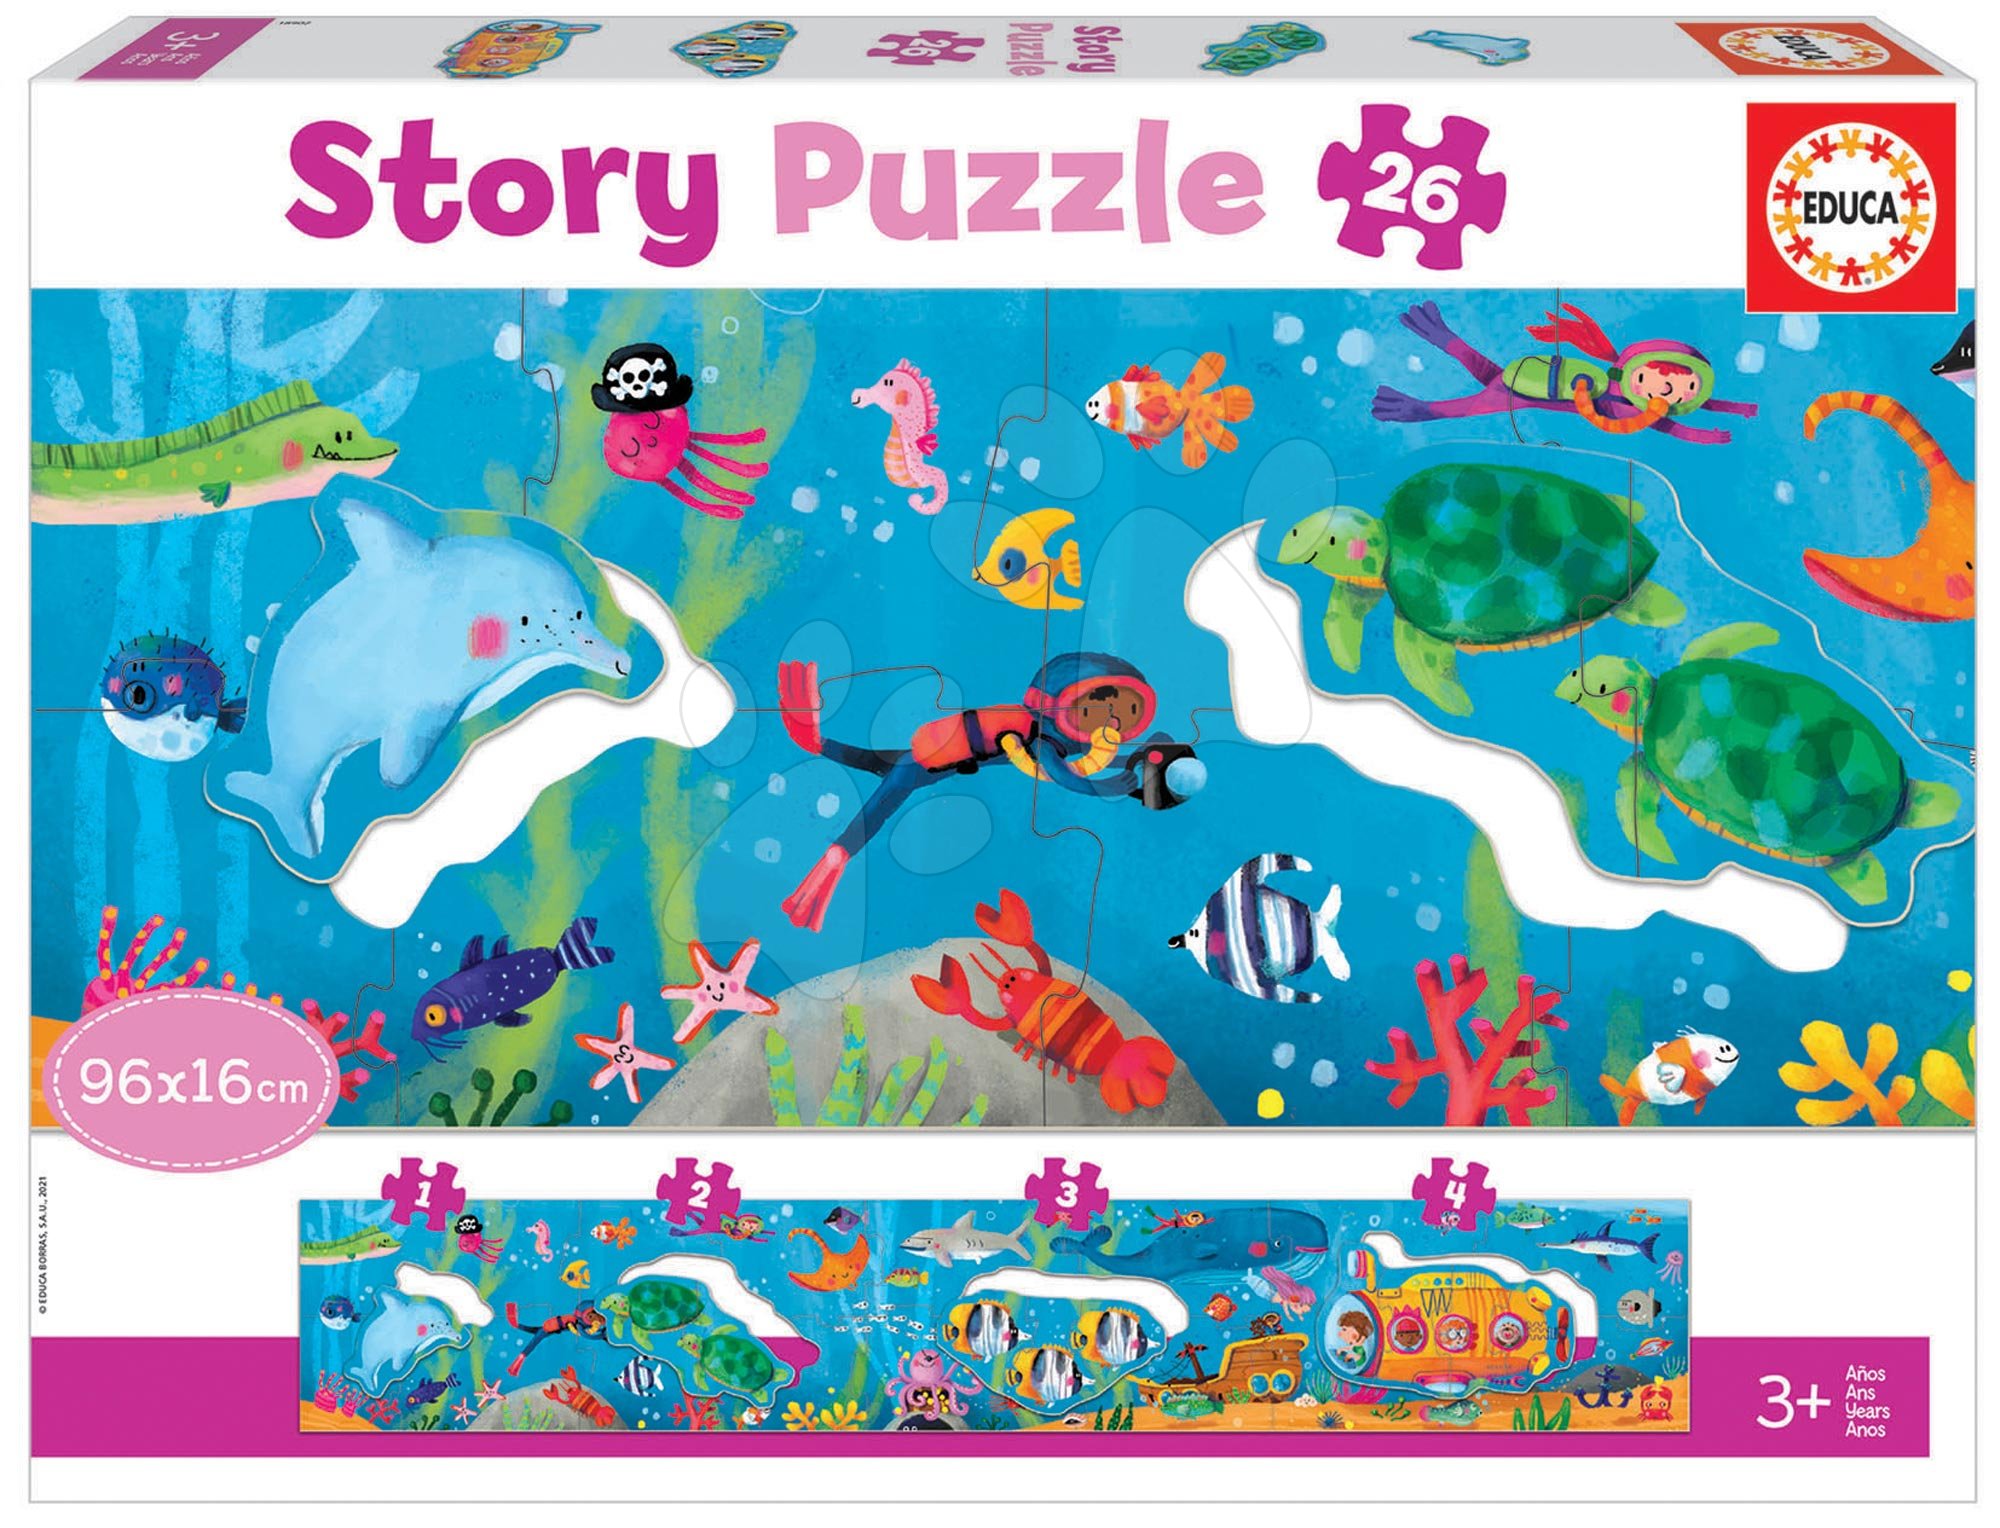 Gyerek puzzle 8 - 99 darabos - Puzzle legkisebbeknek Story Underwater World Educa mese a vízalatti világról 26 darabos